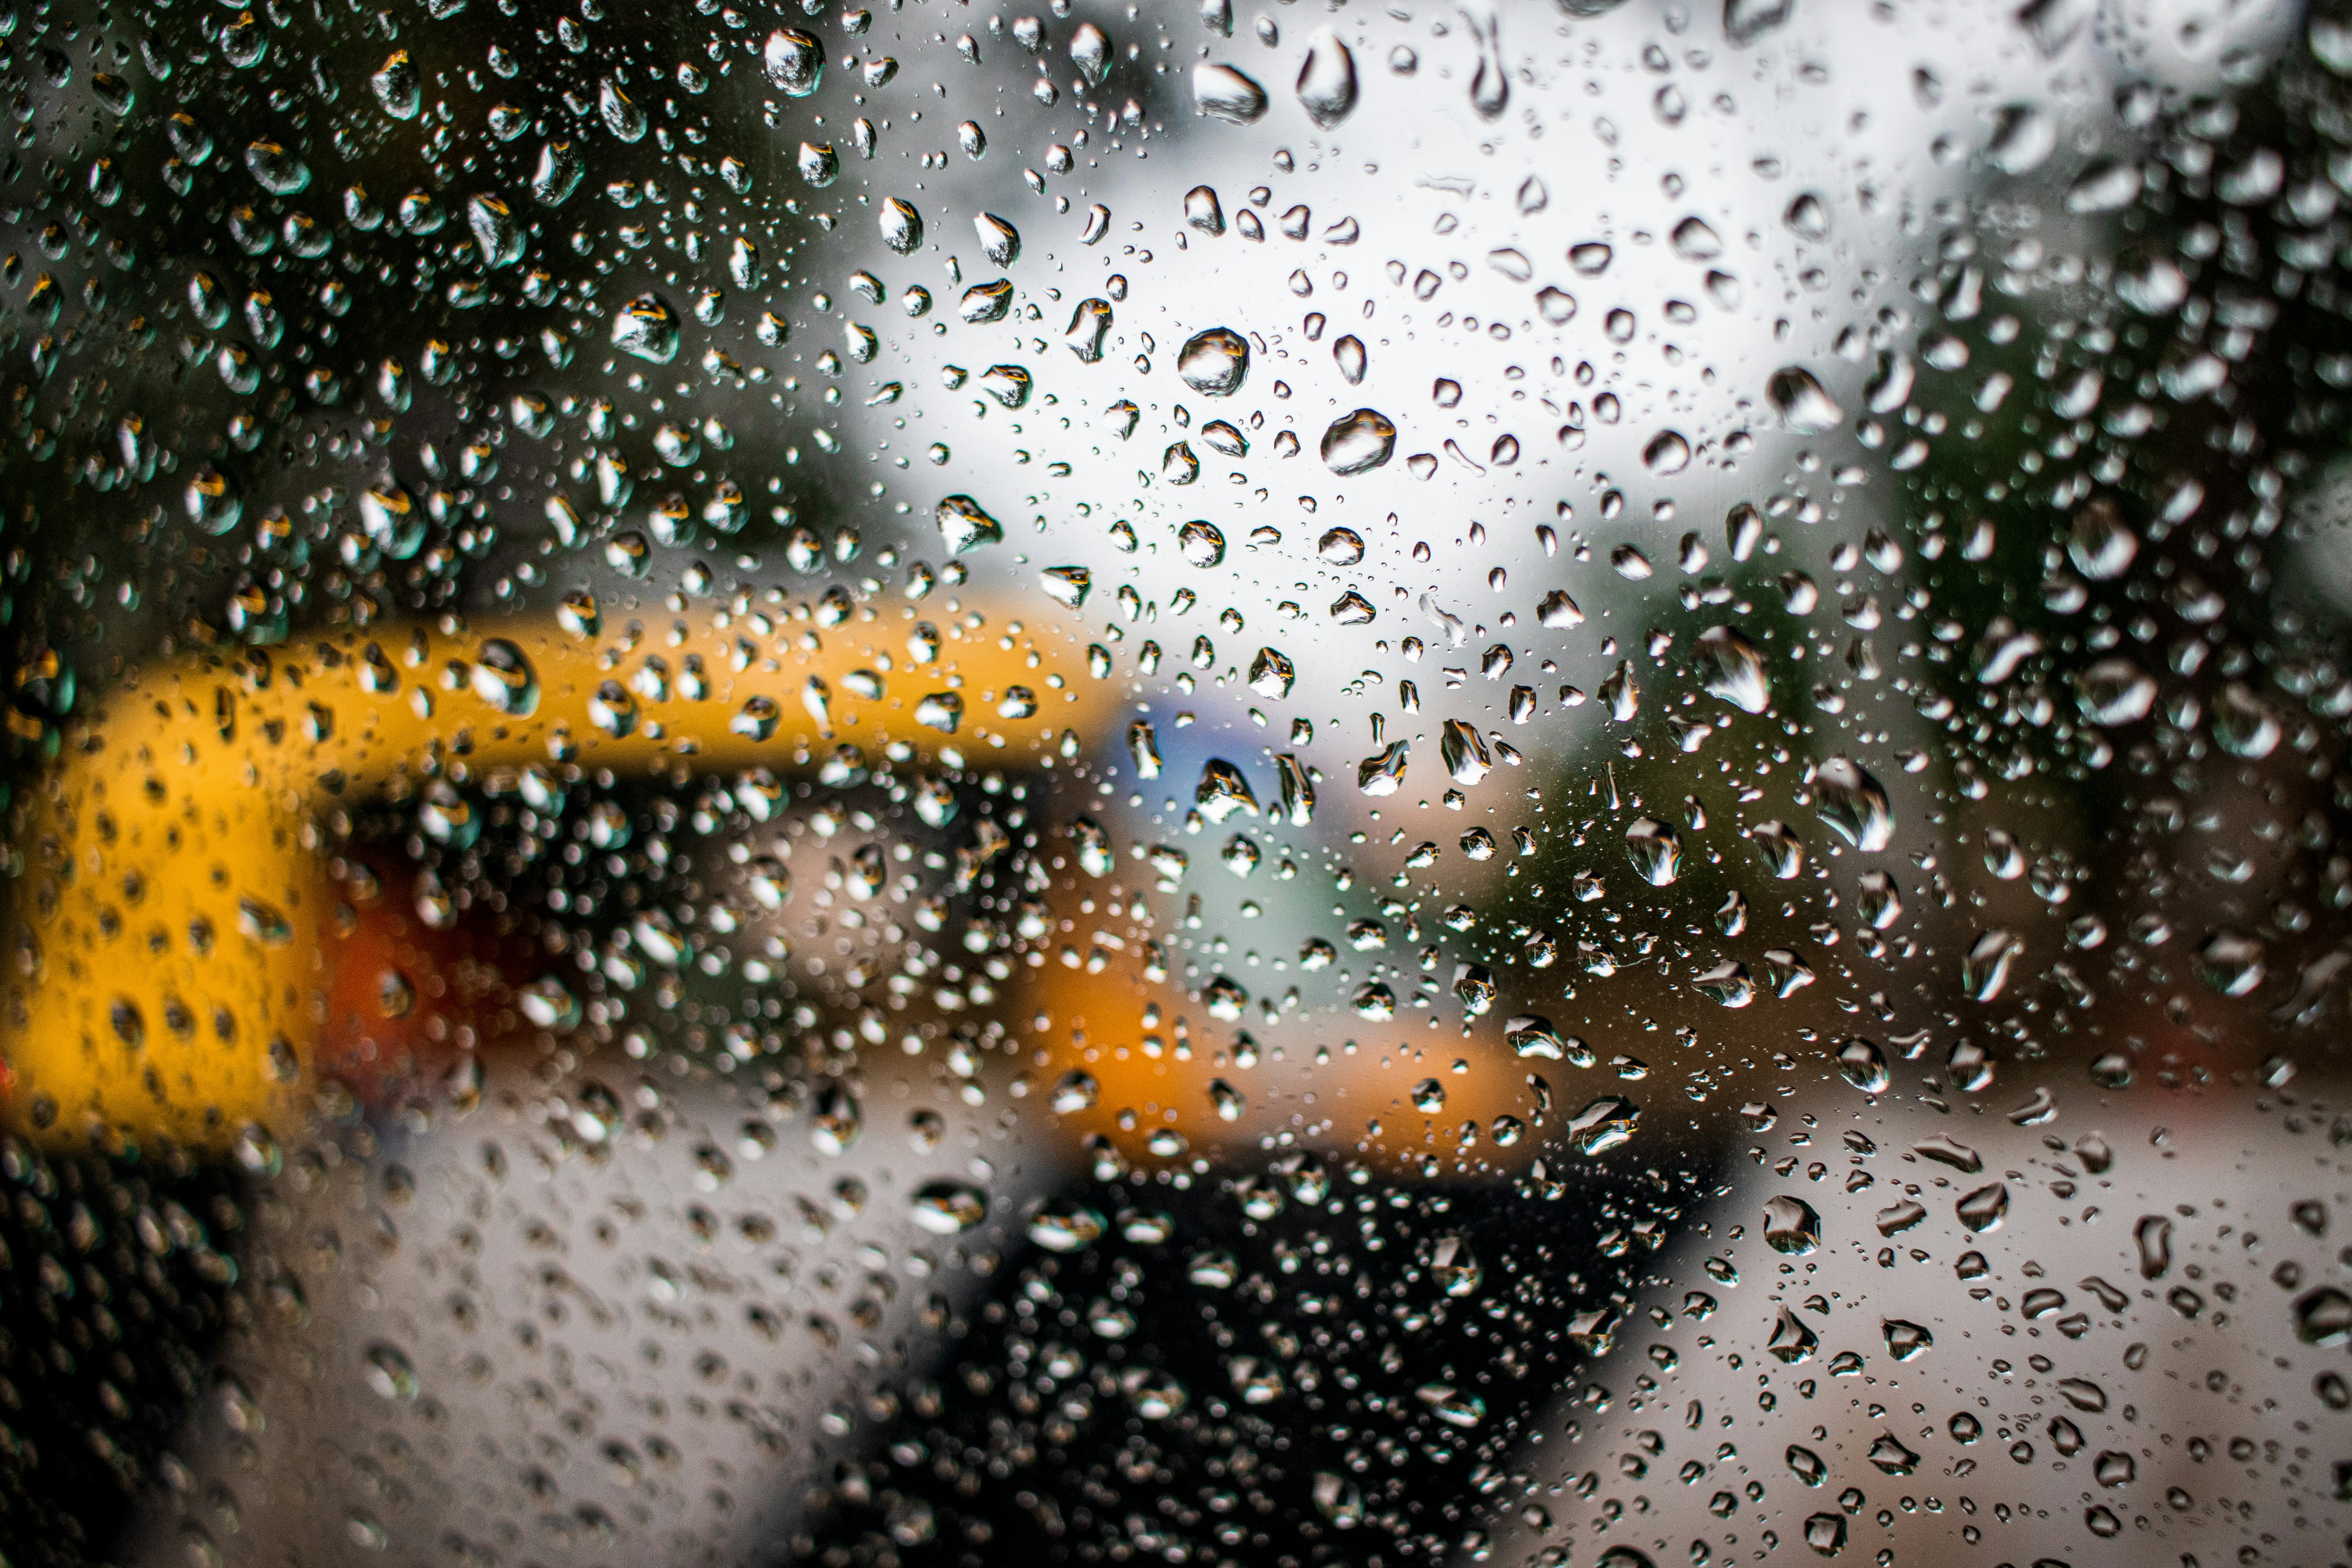 Rainfall on window